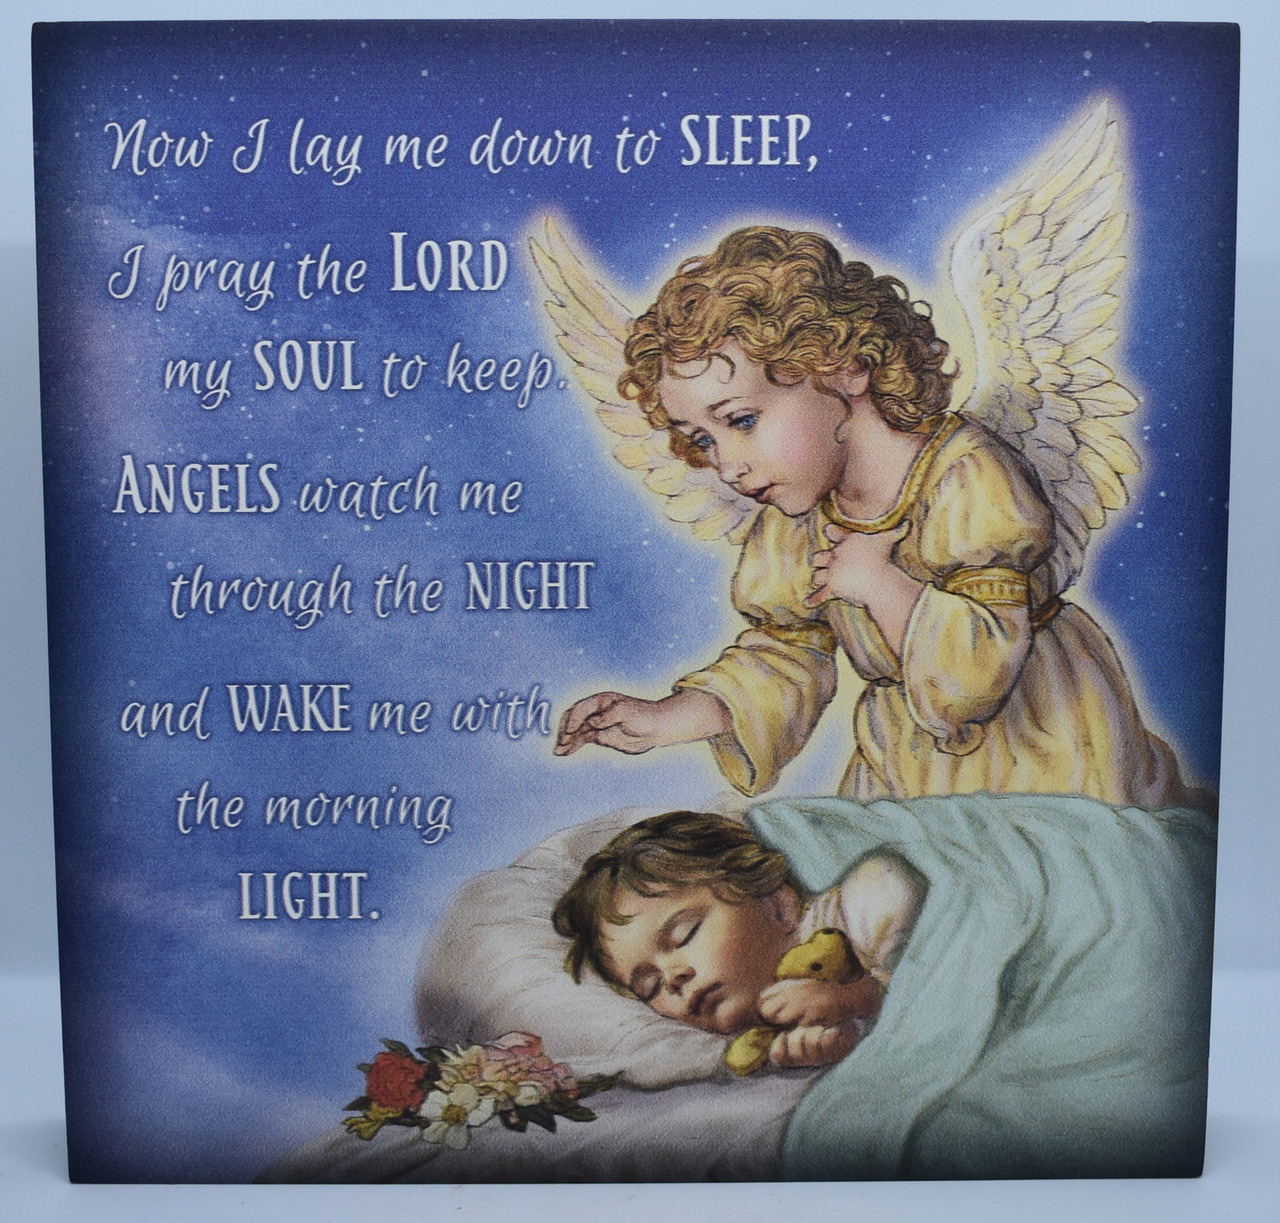 Doa menjelang tidur malam